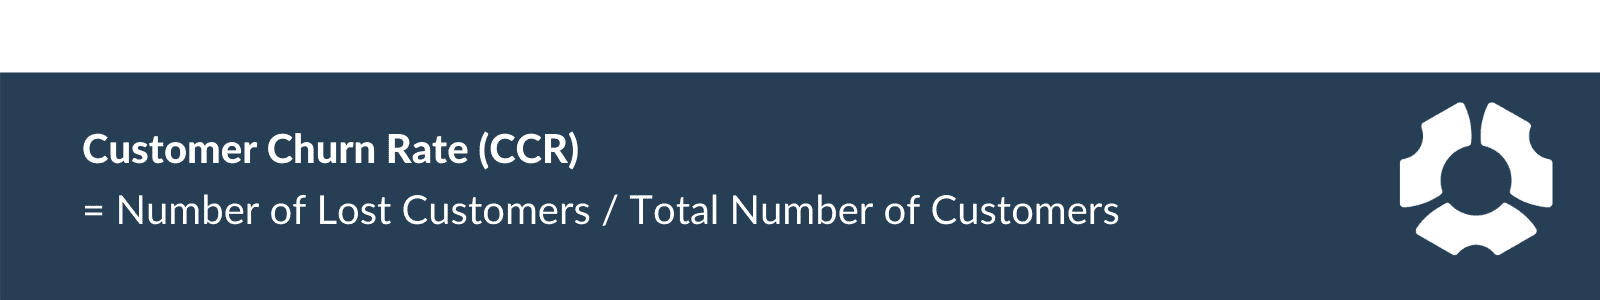 Customer churn rate (CCR) formula